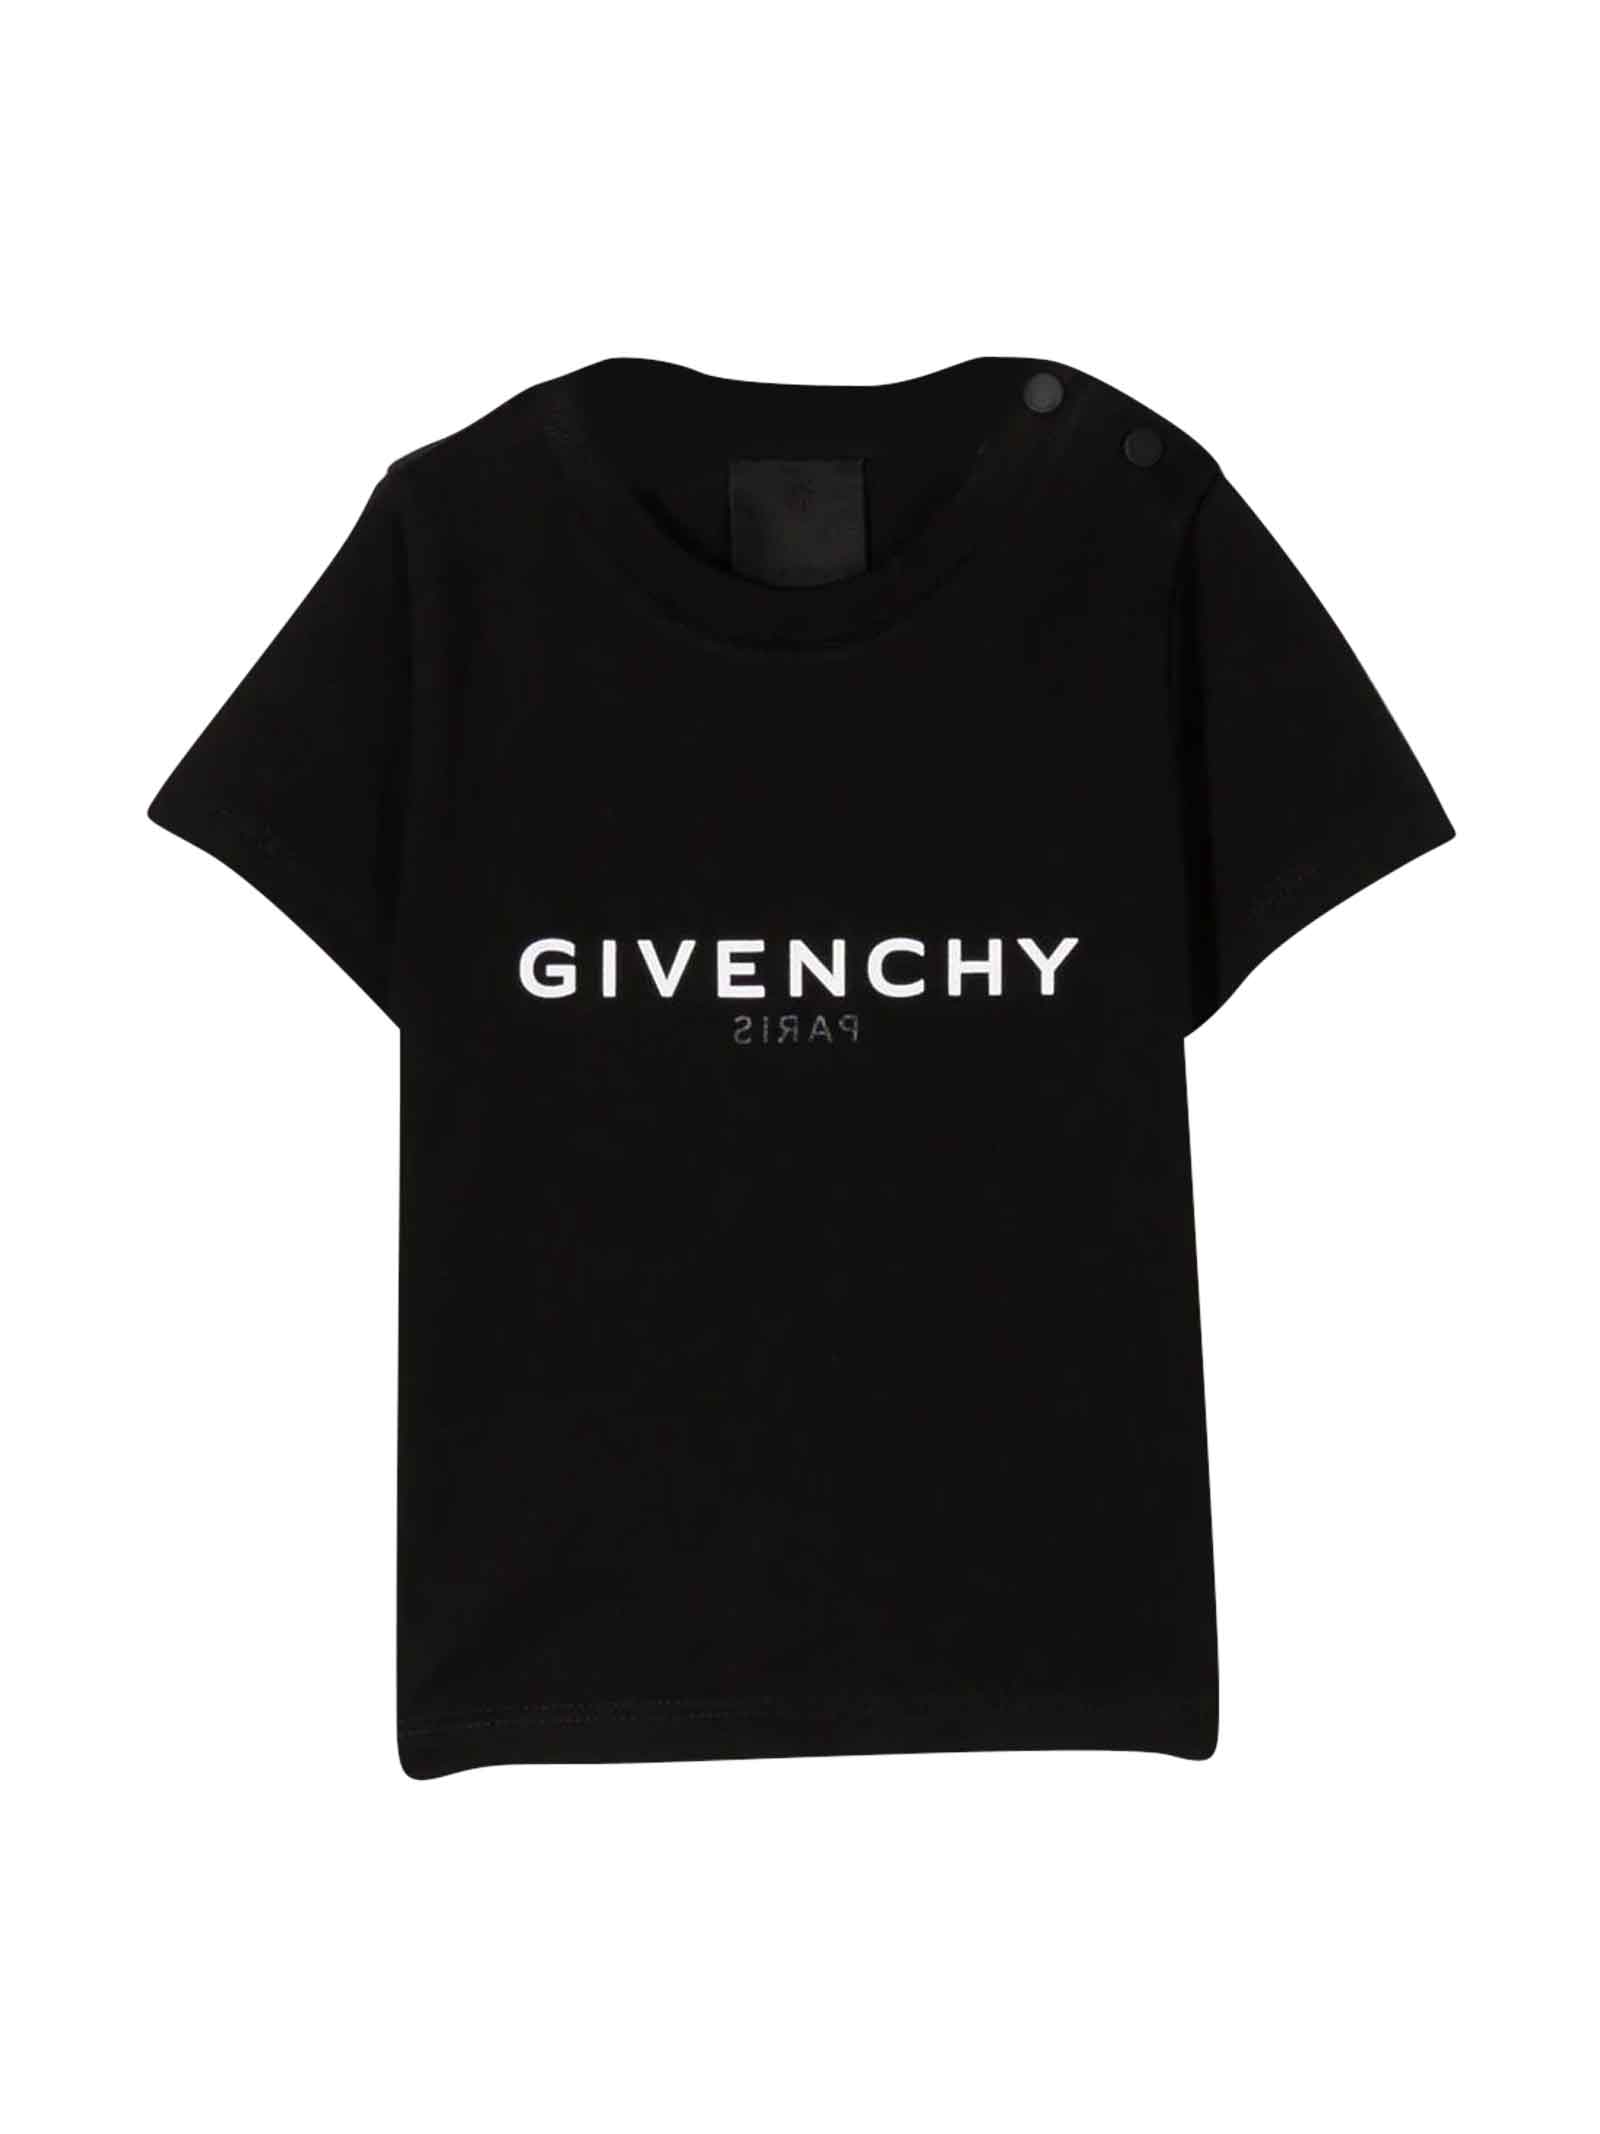 Givenchy Black T-shirt Baby Unisex